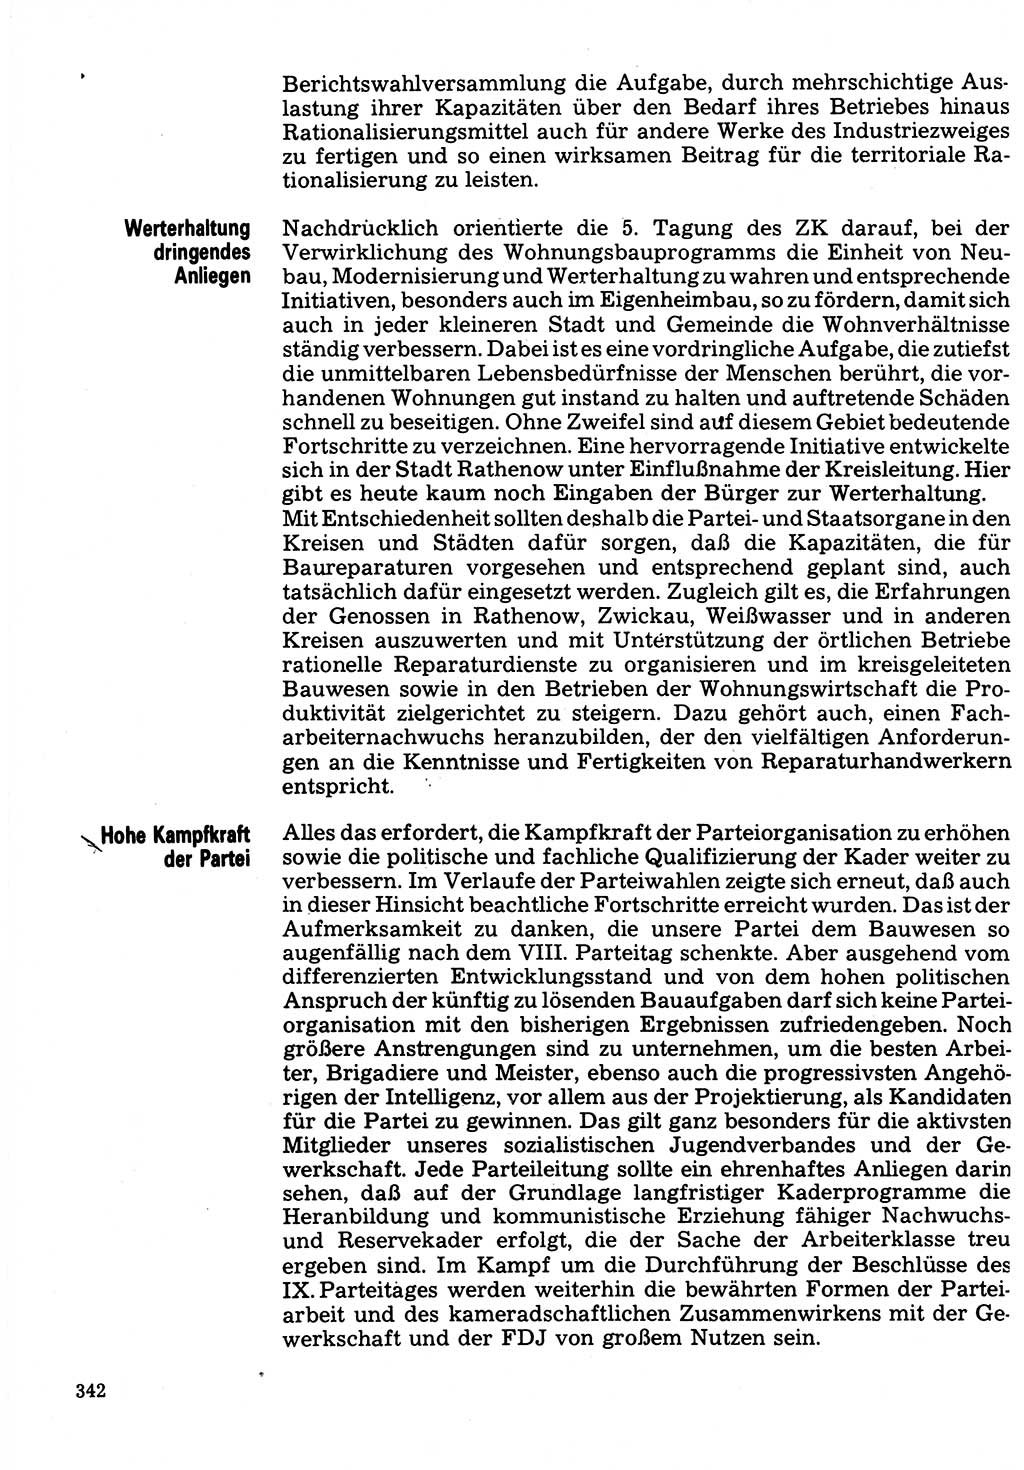 Neuer Weg (NW), Organ des Zentralkomitees (ZK) der SED (Sozialistische Einheitspartei Deutschlands) für Fragen des Parteilebens, 32. Jahrgang [Deutsche Demokratische Republik (DDR)] 1977, Seite 342 (NW ZK SED DDR 1977, S. 342)